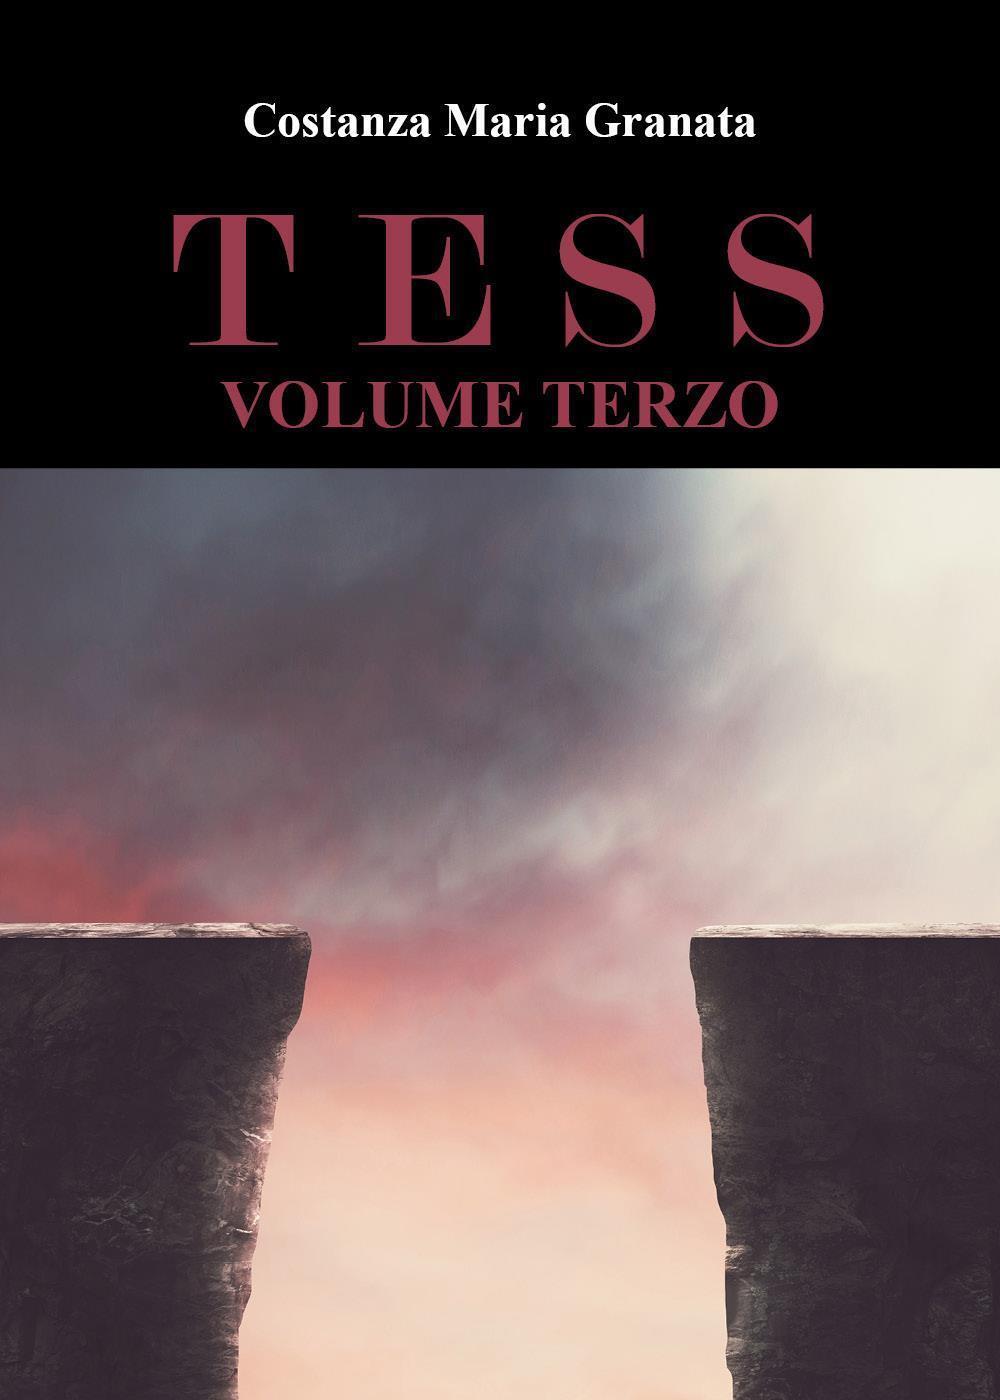 Tess volume terzo